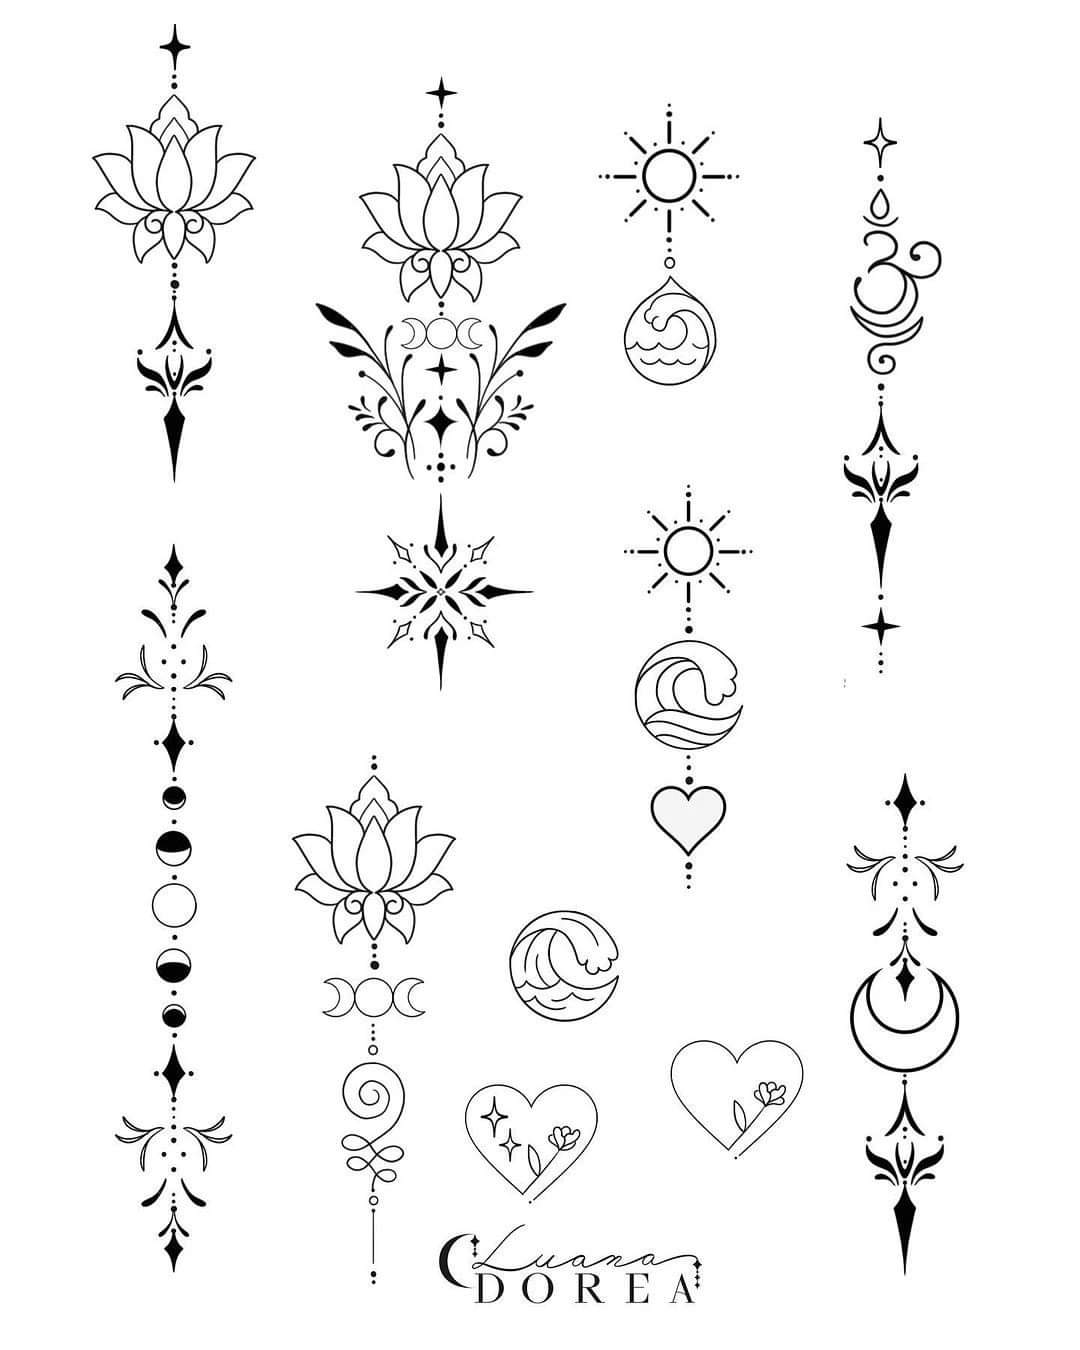 109 Tatuaggi sulla colonna vertebrale diversi schizzi longitudinali con fasi lunari fiori di loto cuori unalome